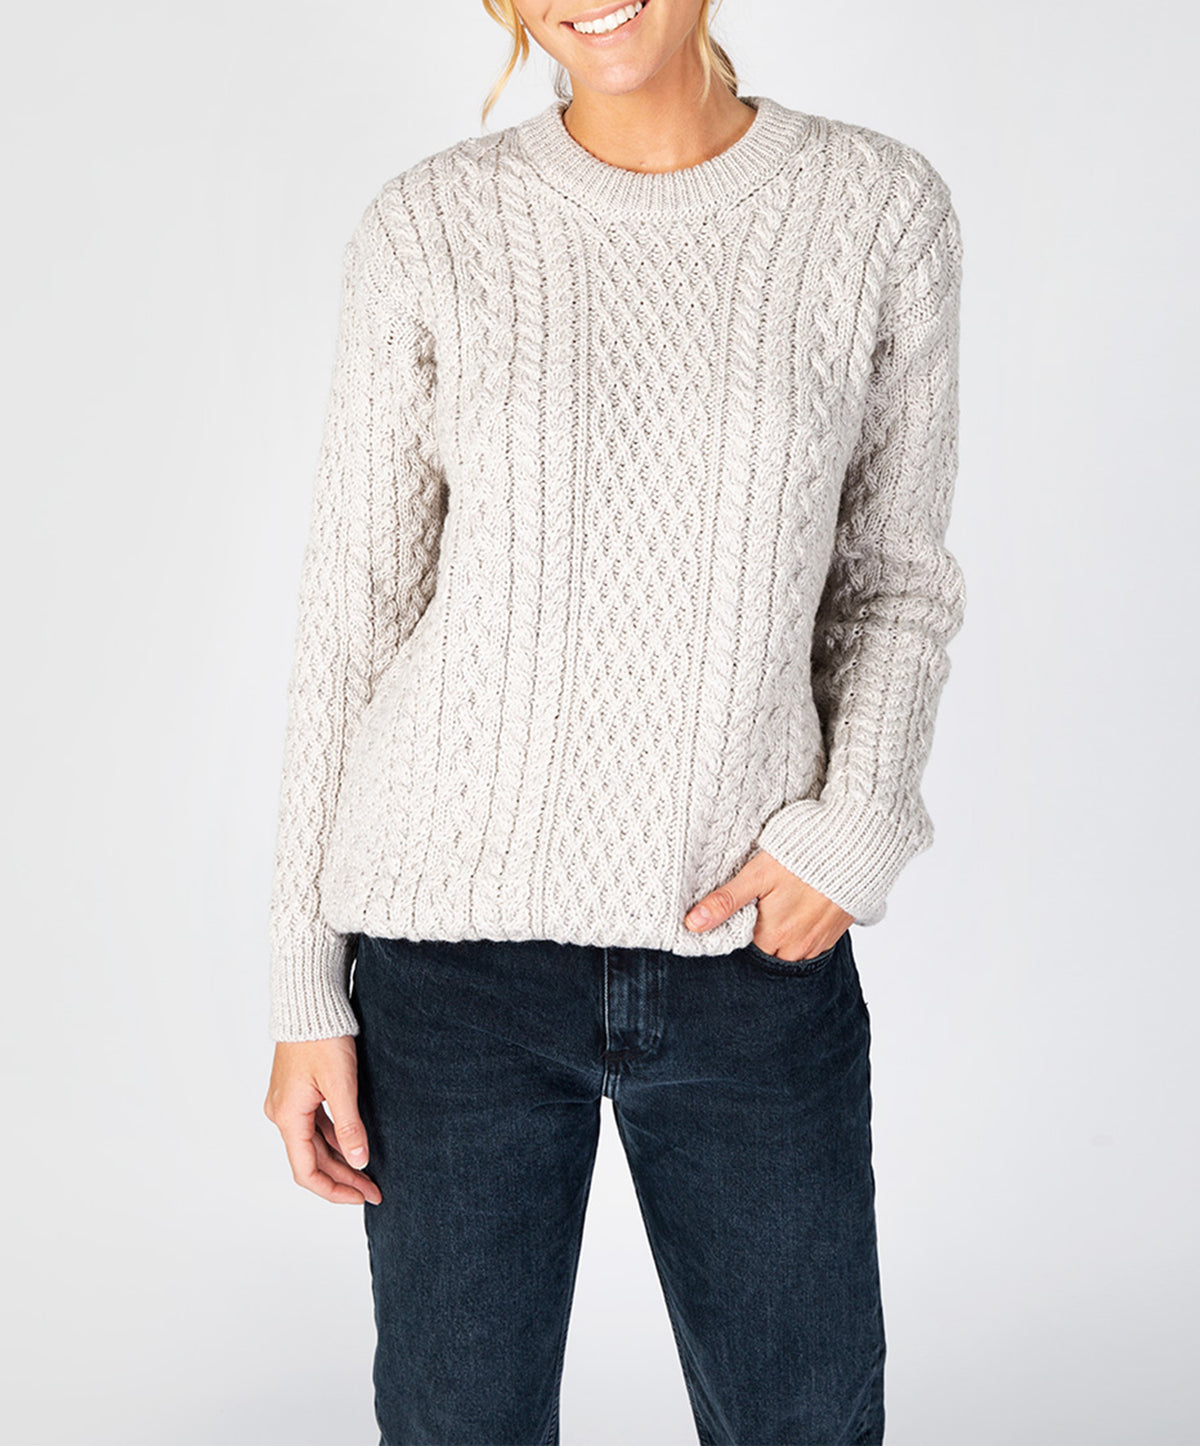 Irish Sweater Aran Knit Pattern Womens Sweater 95% Wool 5% Cashmere So –  Biddy Murphy Irish Gifts